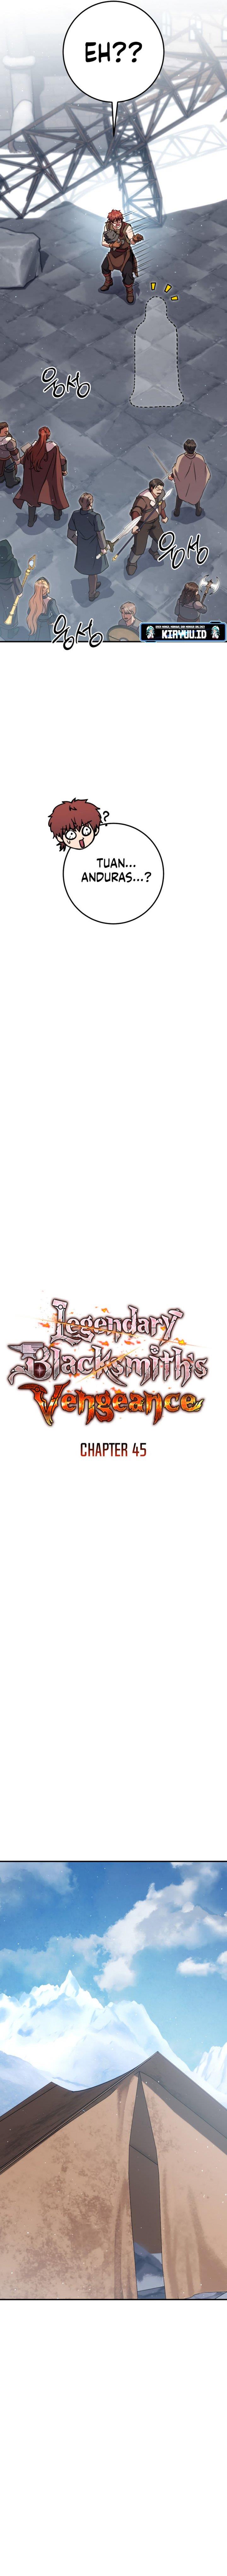 Legendary Blacksmith’s Vengeance Chapter 45